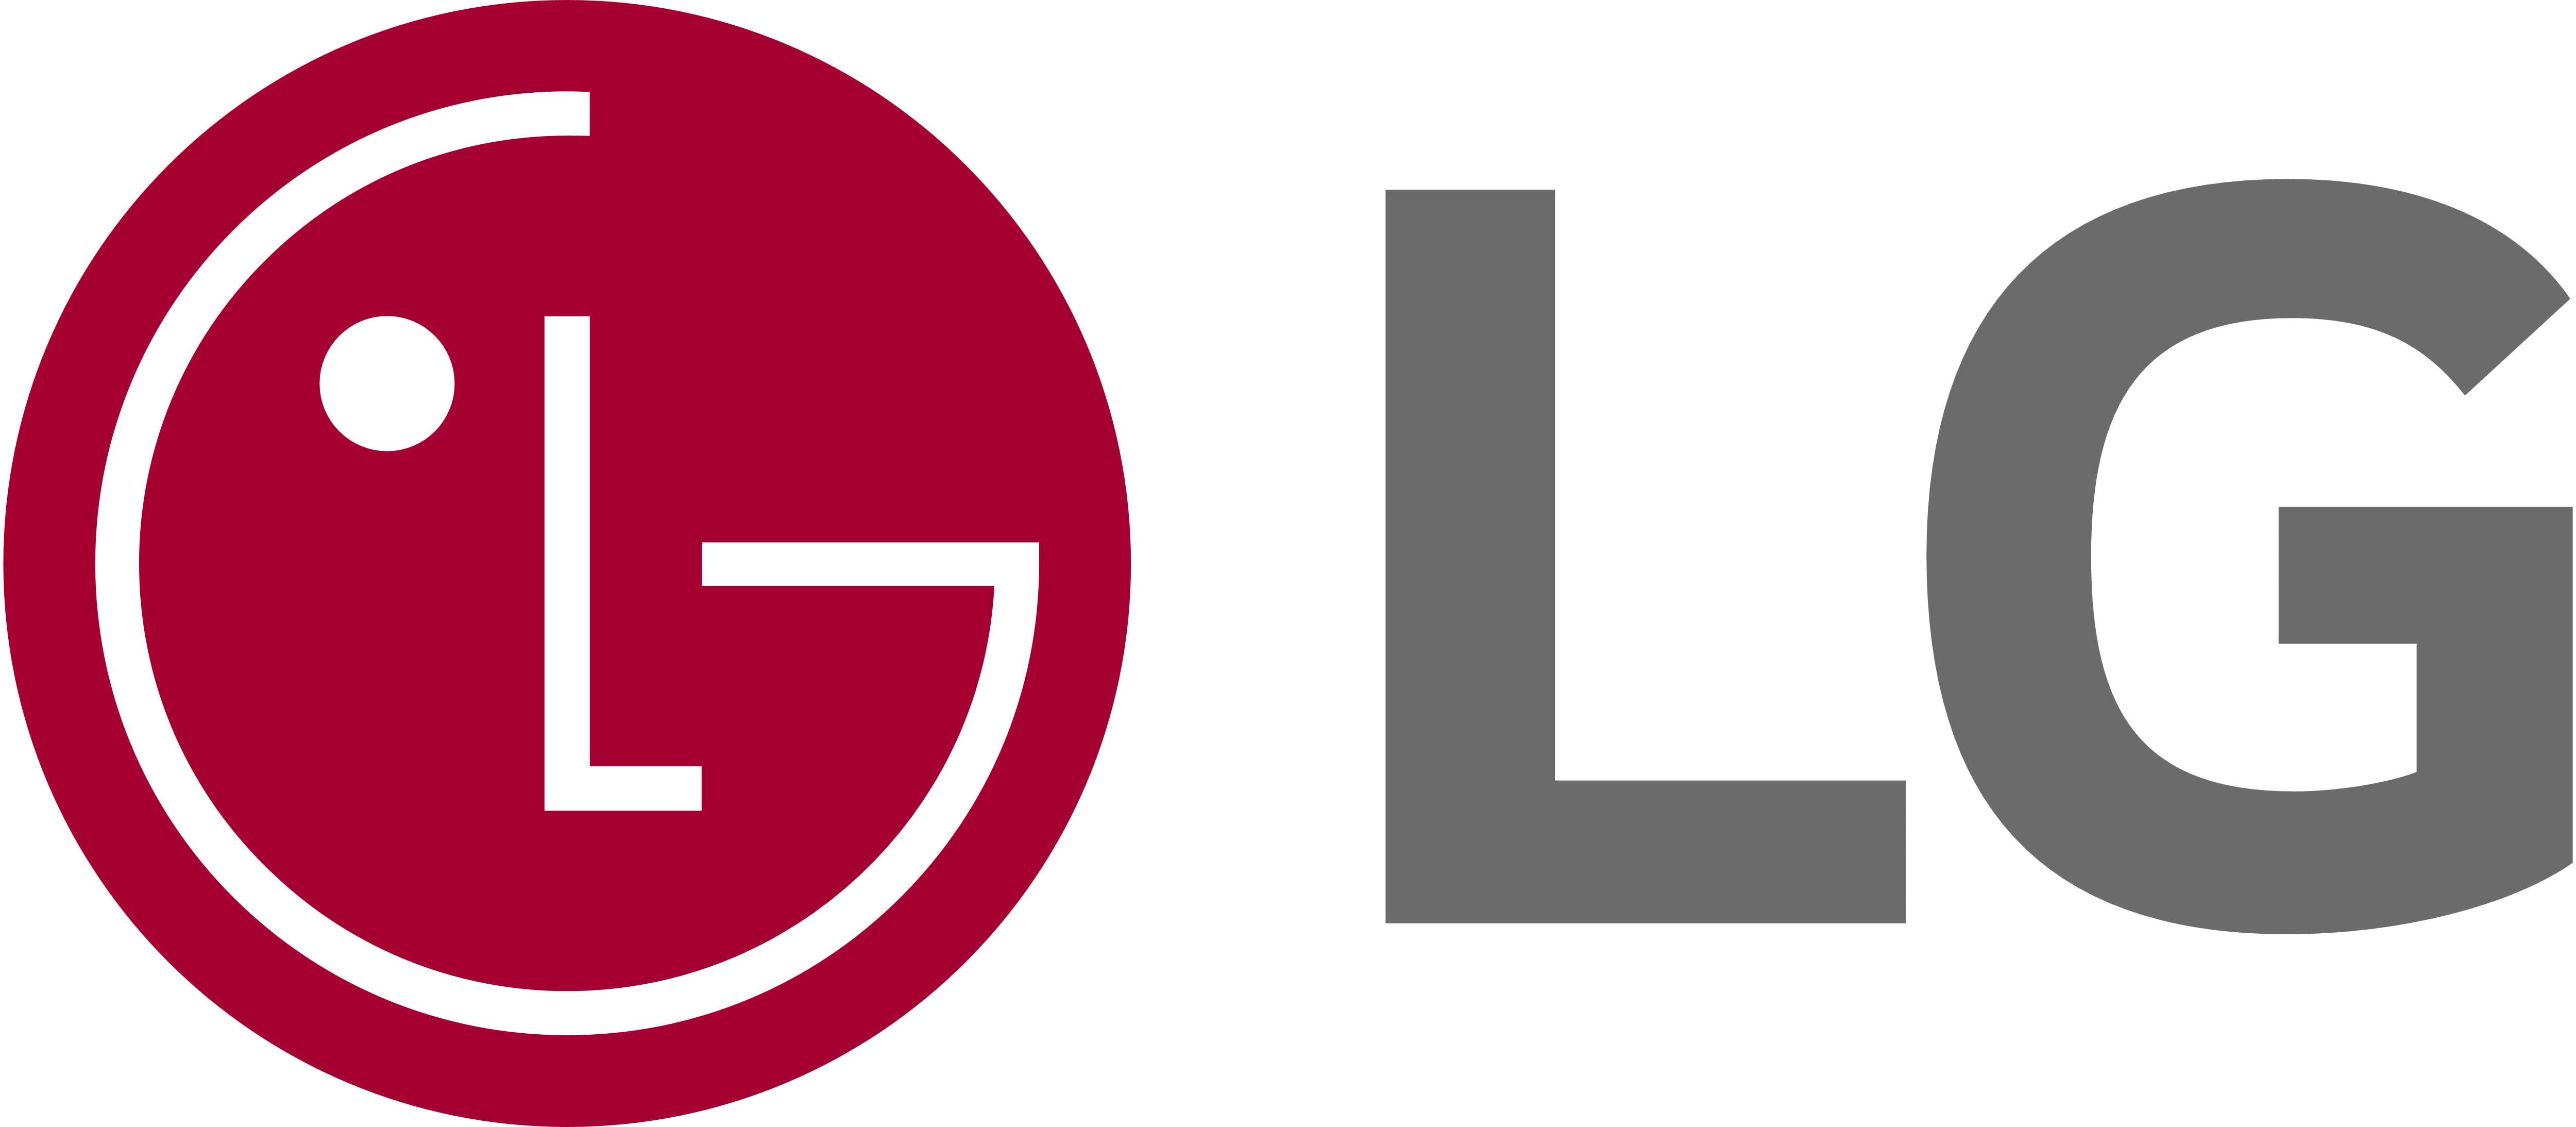 LG Stove Appliance Repair, GE Stove Repair